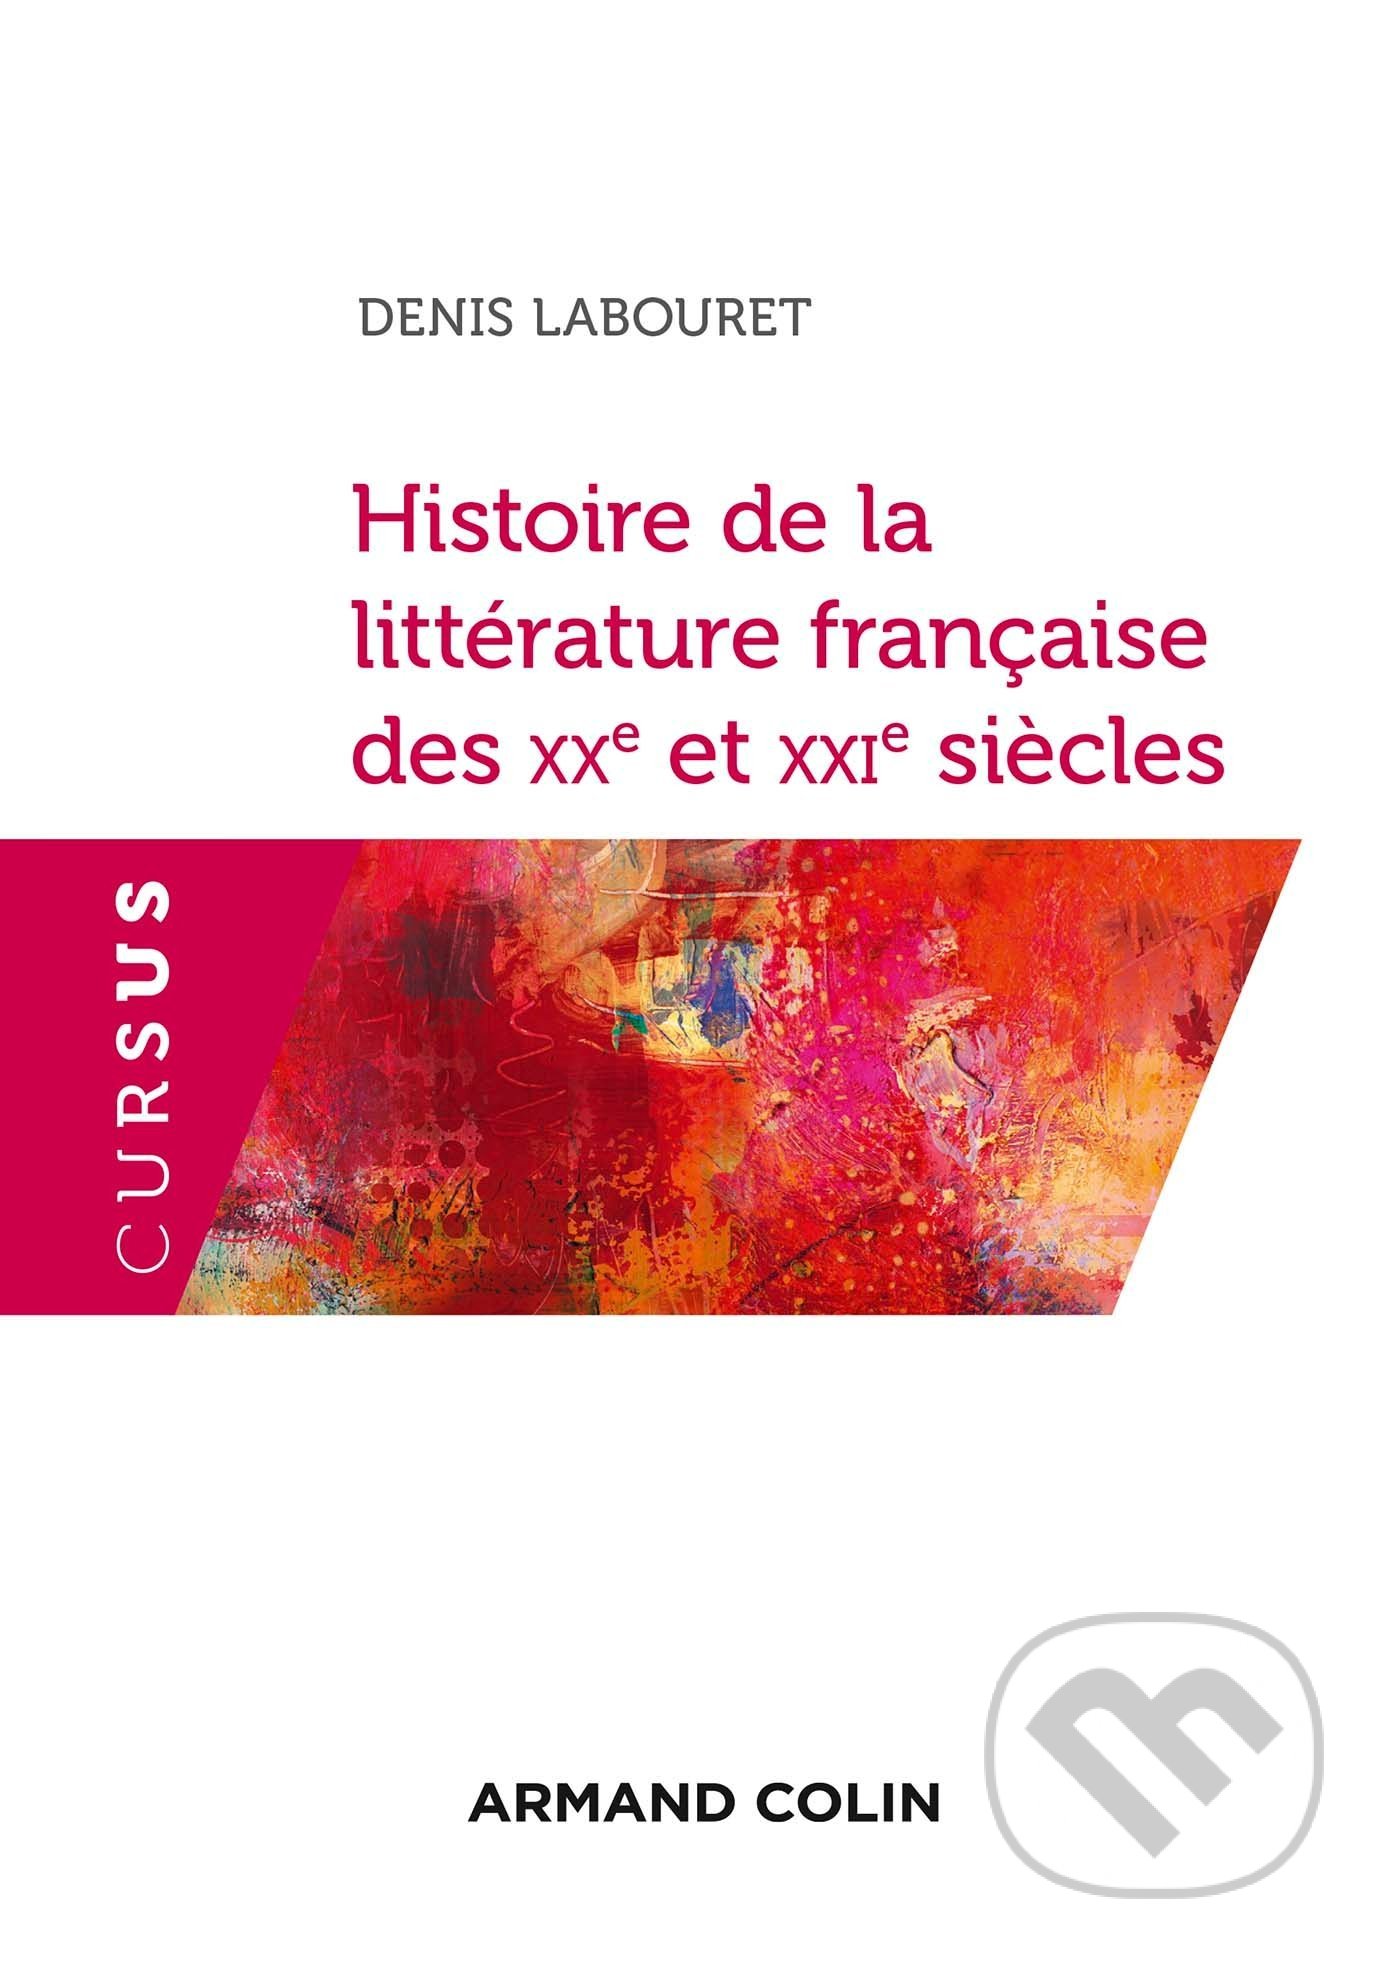 Histoire de la littérature française des XXe et XXIe siècles - Denis Labouret, ARMAND COLIN, 2018